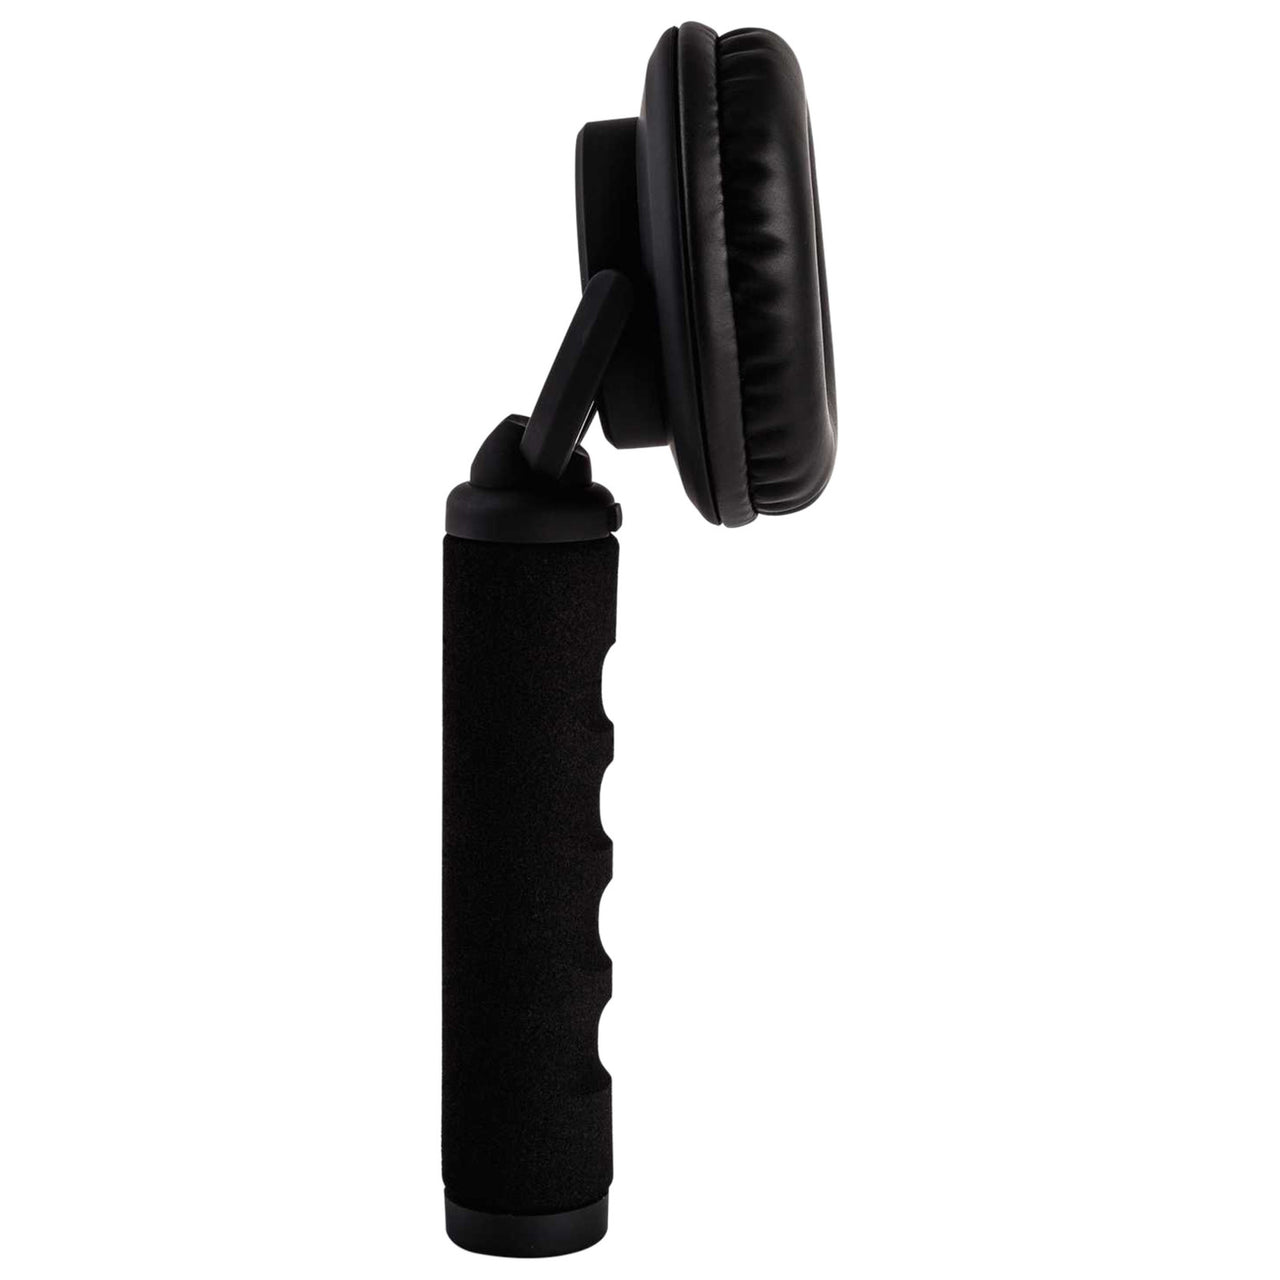 Audifono Reloop Mono Black Rhp-10 ergonómicamente acolchada